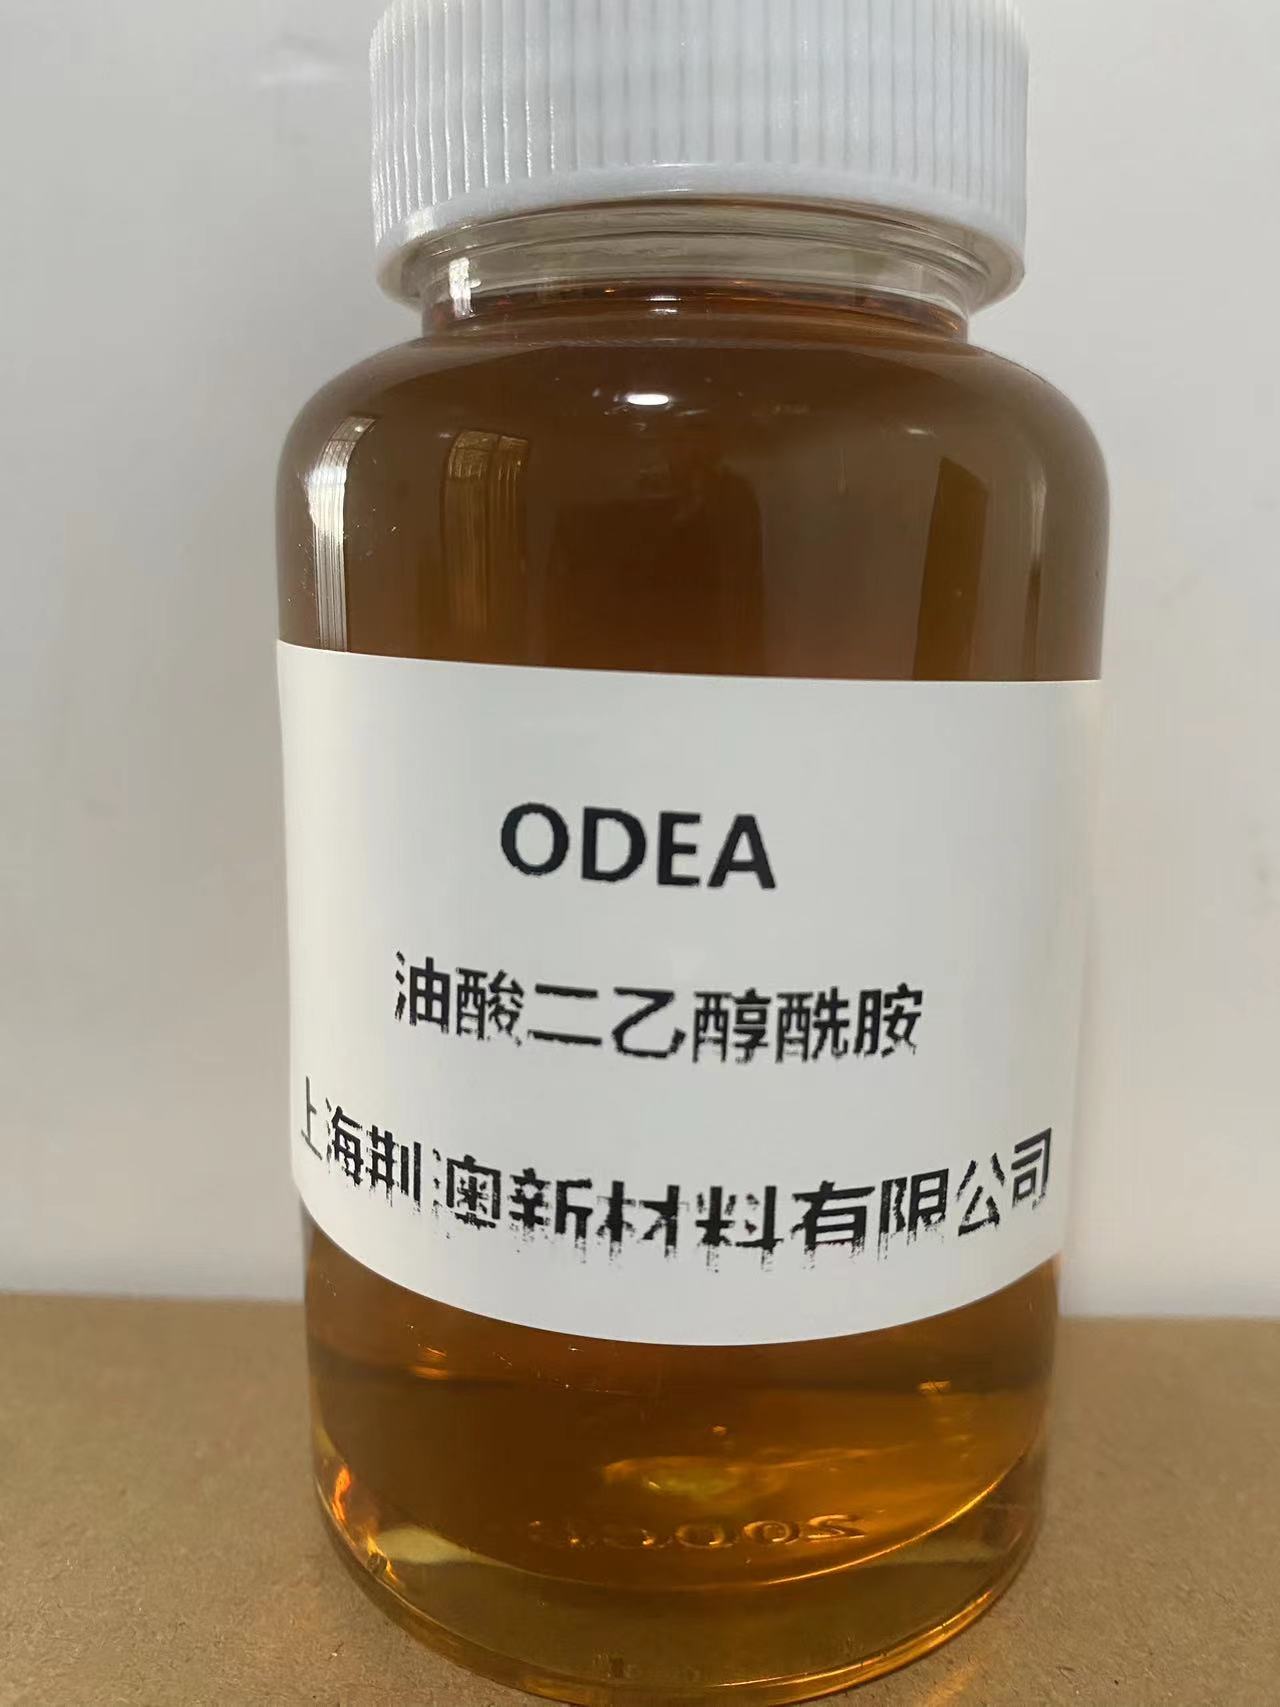 油酸二乙醇酰胺 ODEA